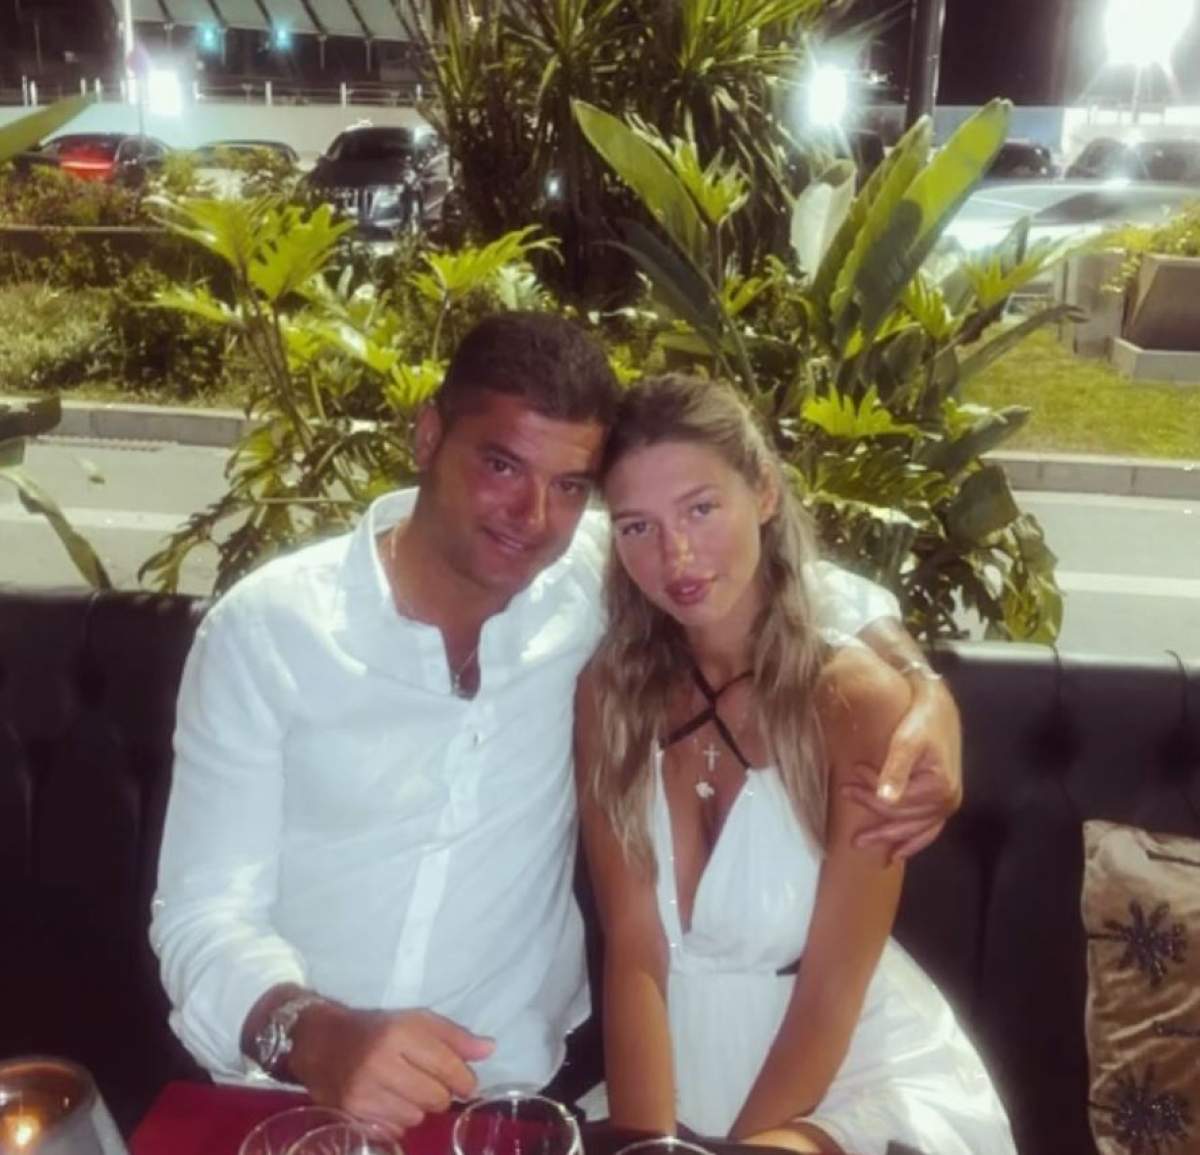 Cristi Boureanu si Laura Dinca sunt la masa in Seychelles, poarta haine albe